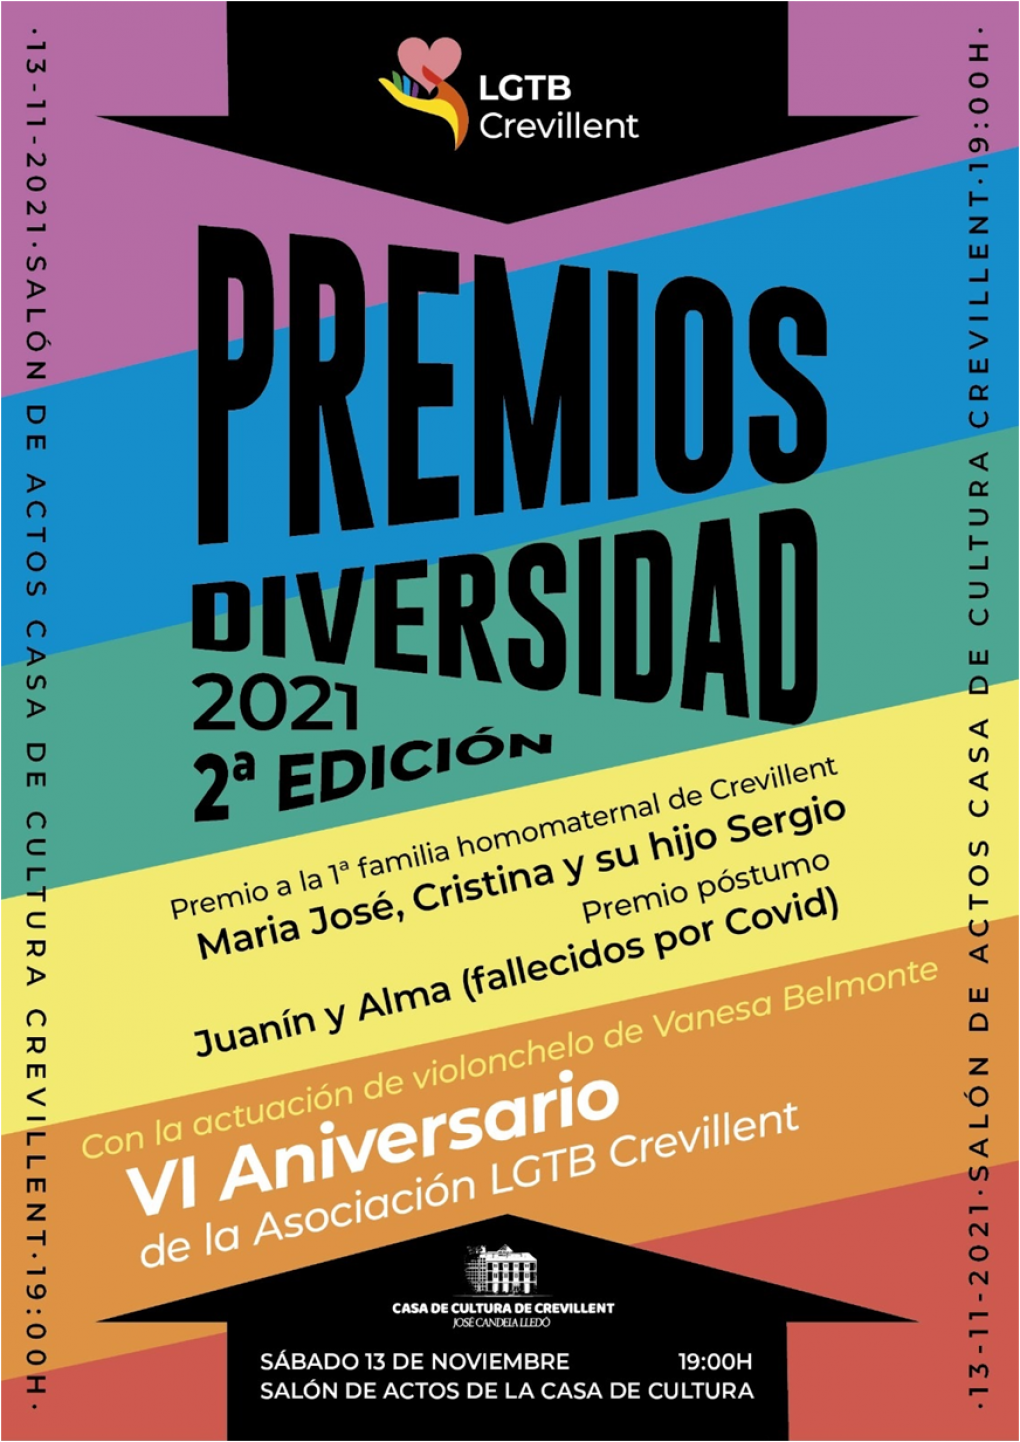 ACTO DE ENTREGA DE PREMIOS DIVERSIDAD LGTB CREVILLENT-2021 SEGUNDA EDICIÓN.